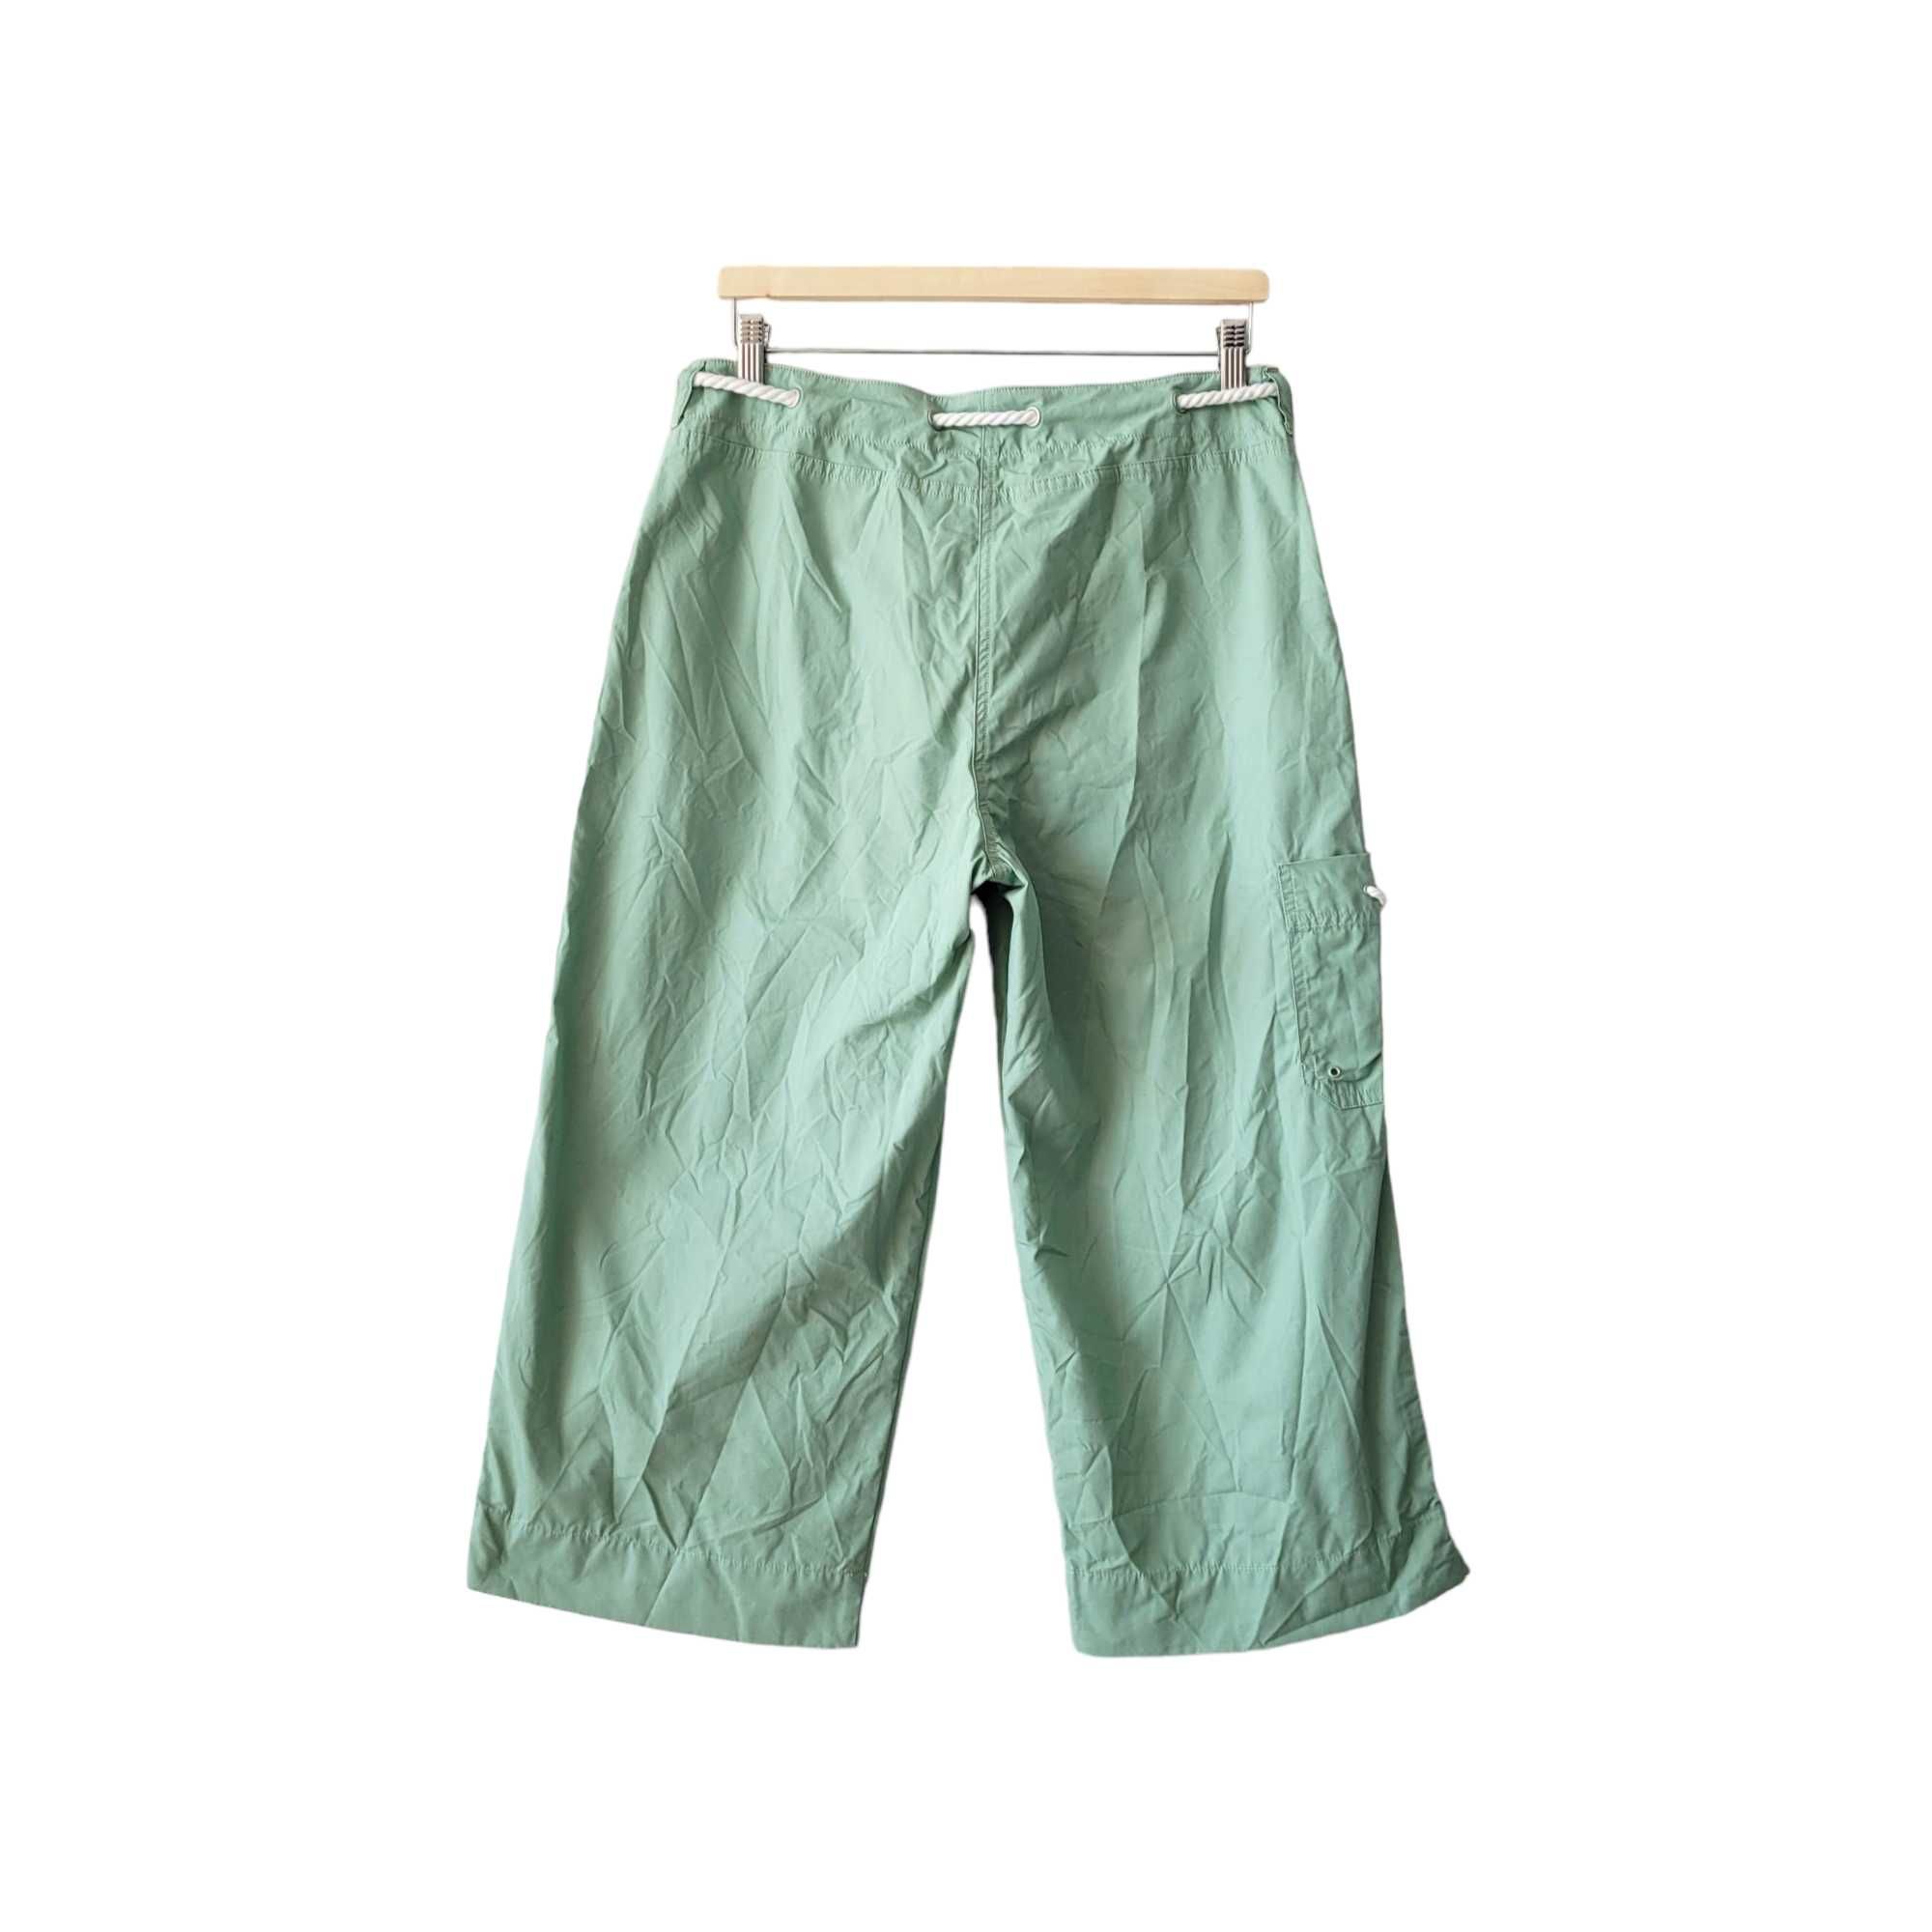 Zielone damskie spodnie rybaczki M 10 Ralph Lauren 100% bawełna cargo